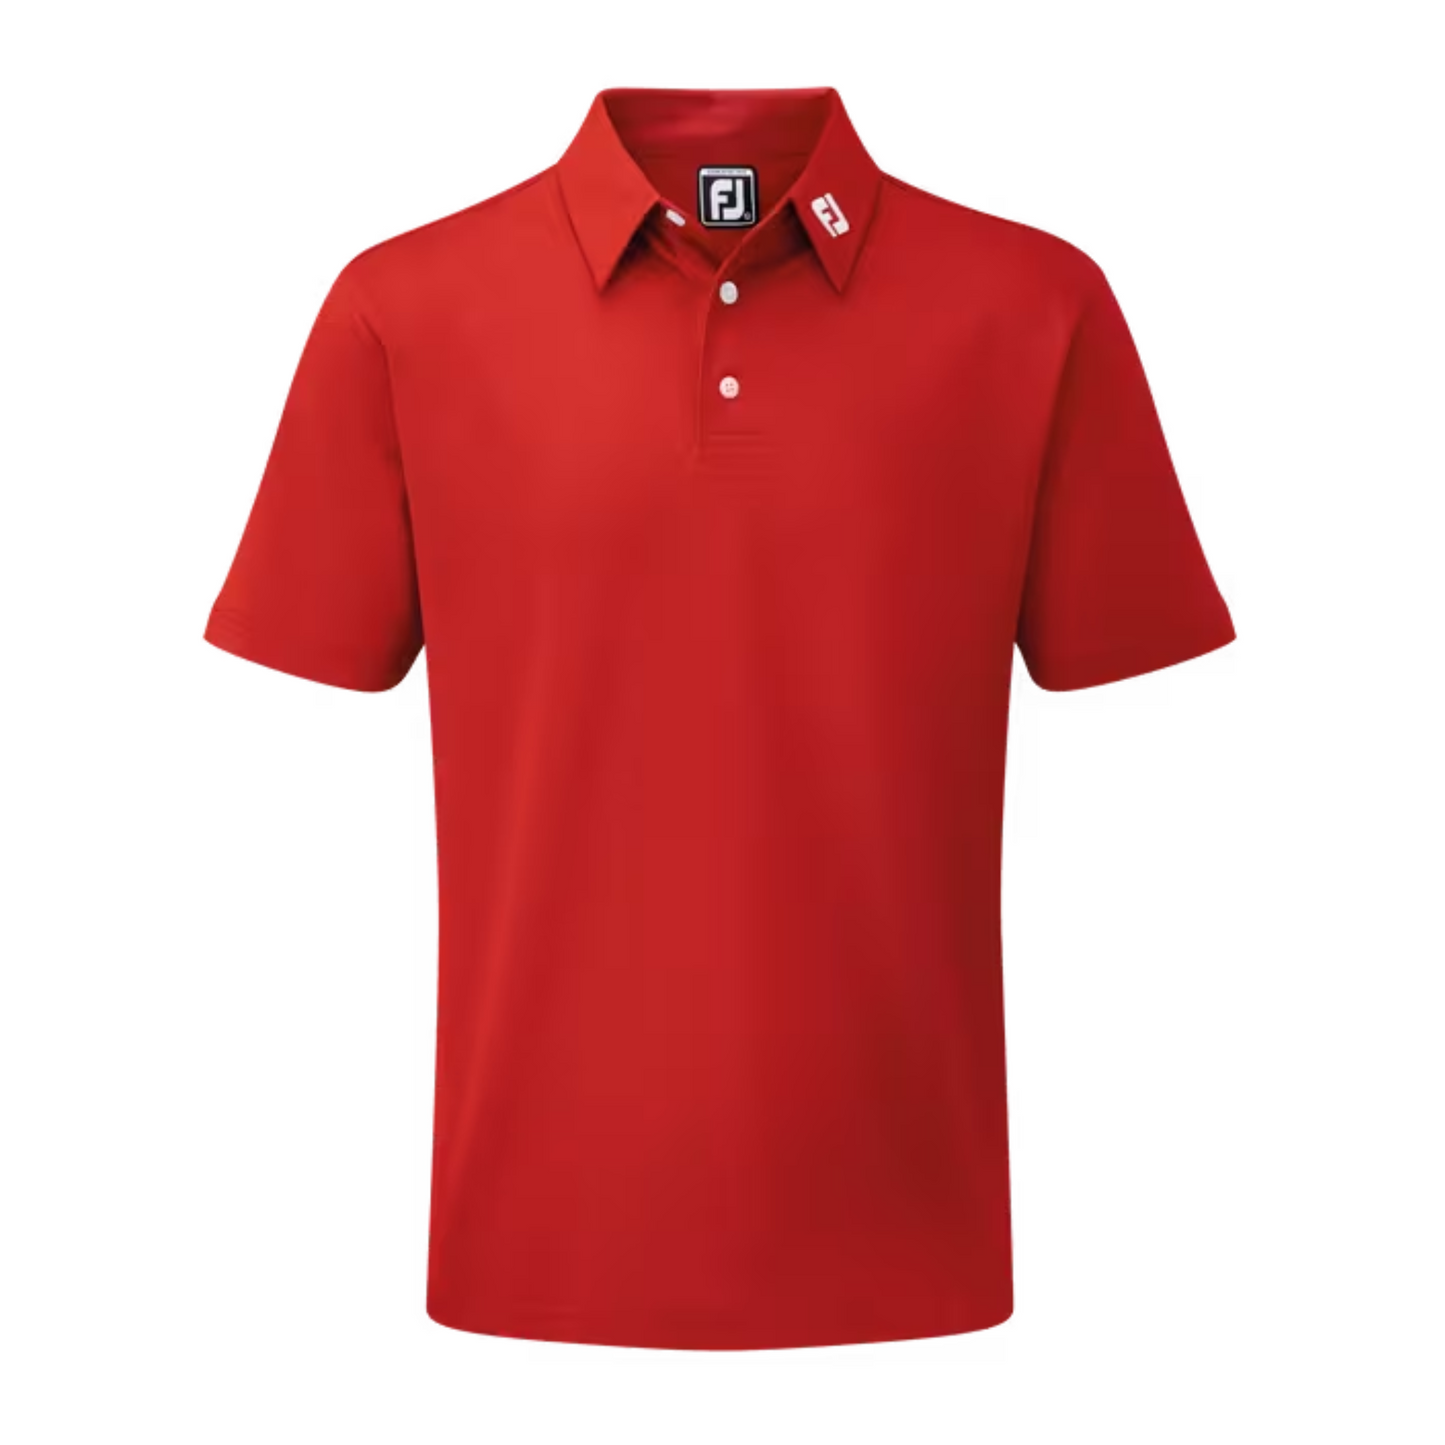 Footjoy Golf Stretch Pique Polo Shirt Red S 